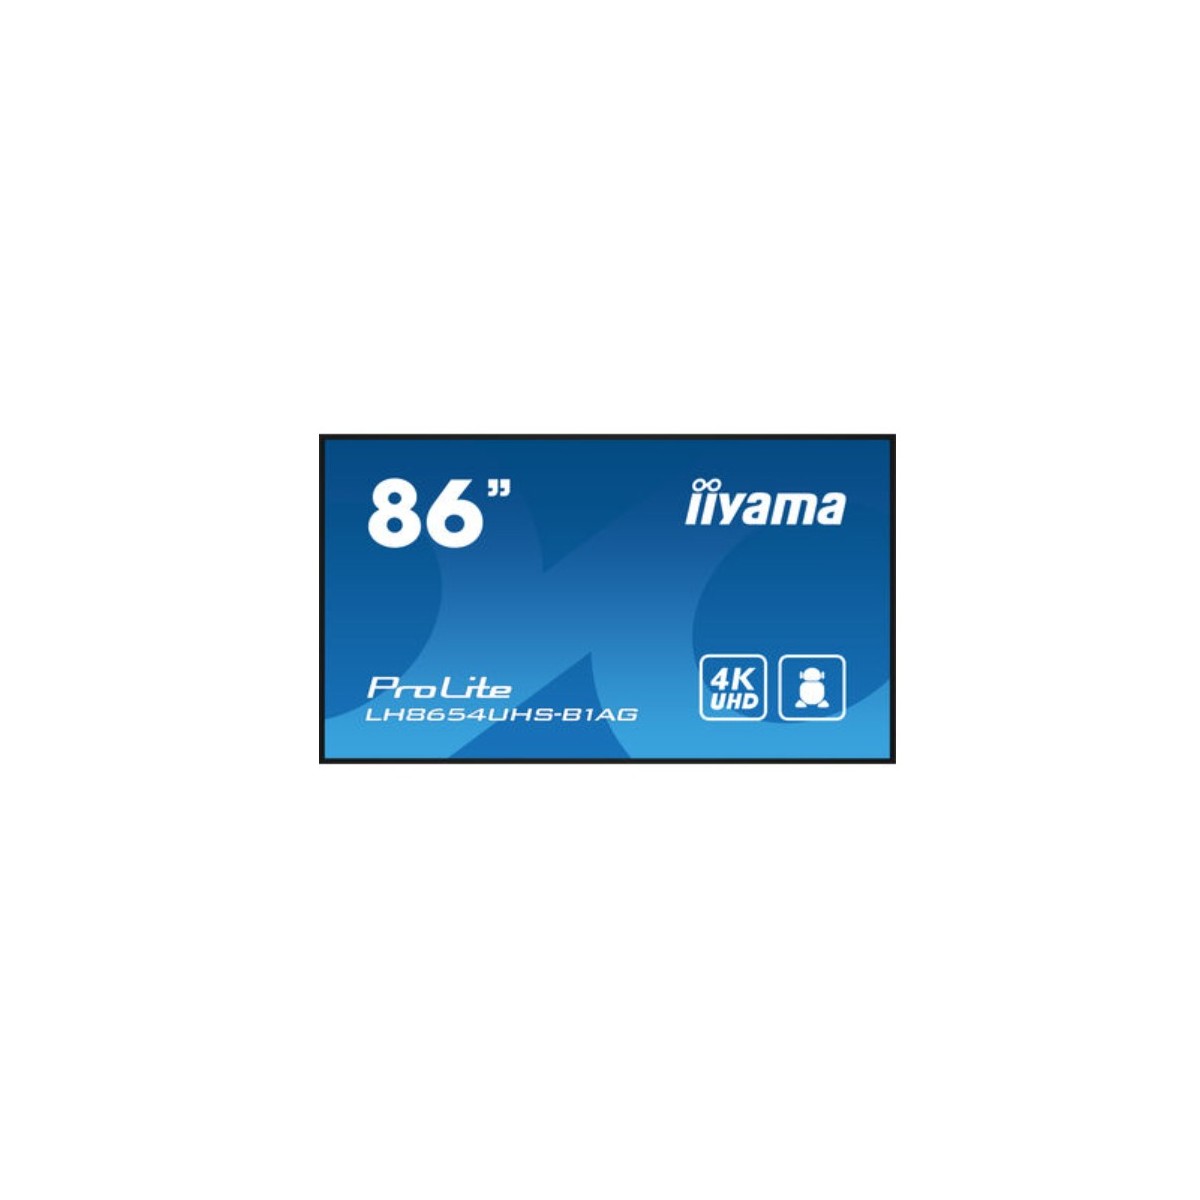 Iiyama 86 3840x2160 UHD IPS panel